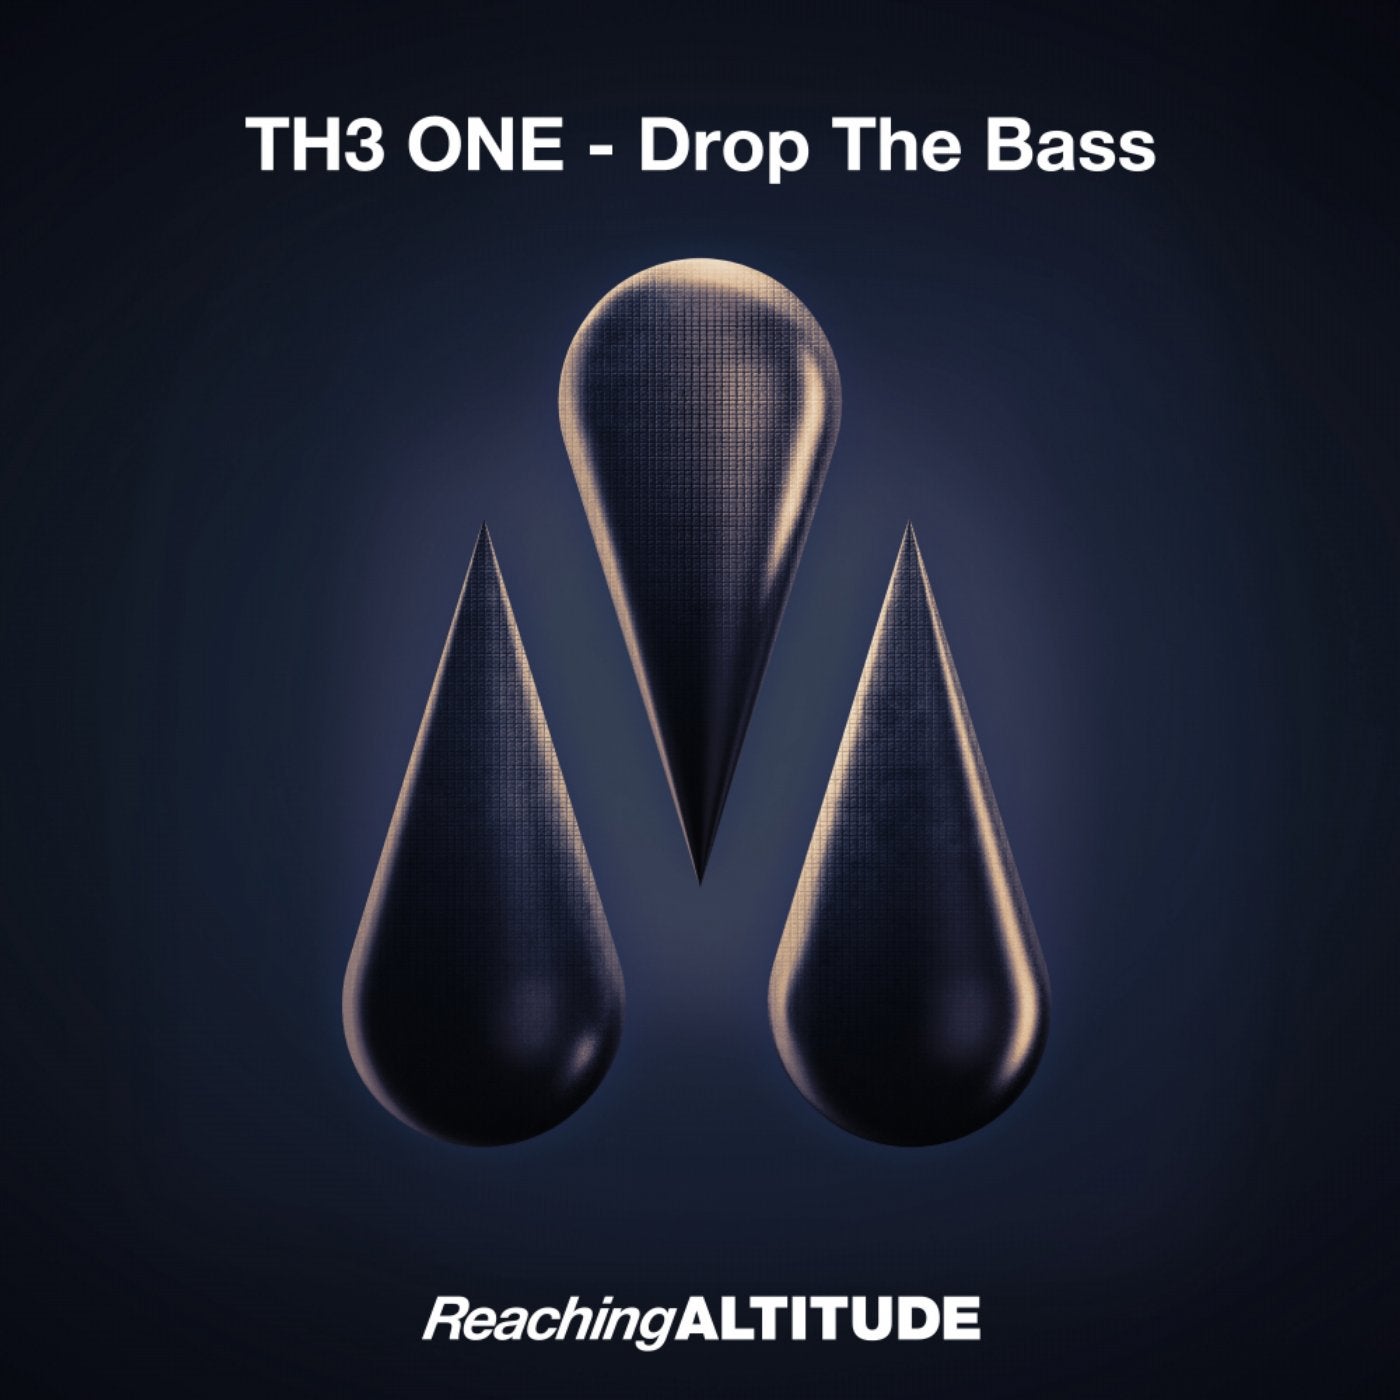 Drop 1.5. Bass extended mix